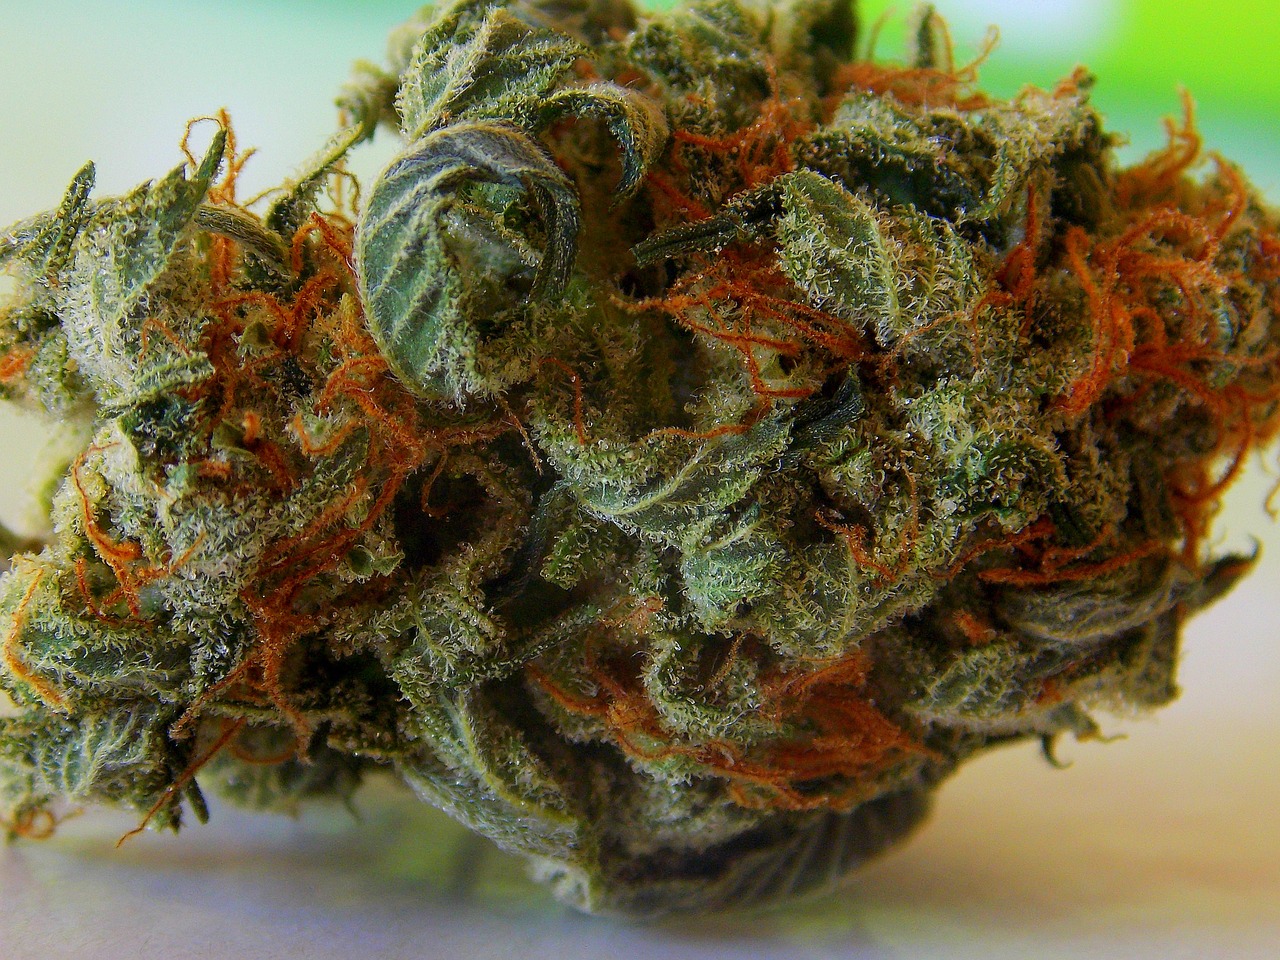 Descarboxilación del cannabis: qué es y cómo se hace- Alchimia Grow Shop